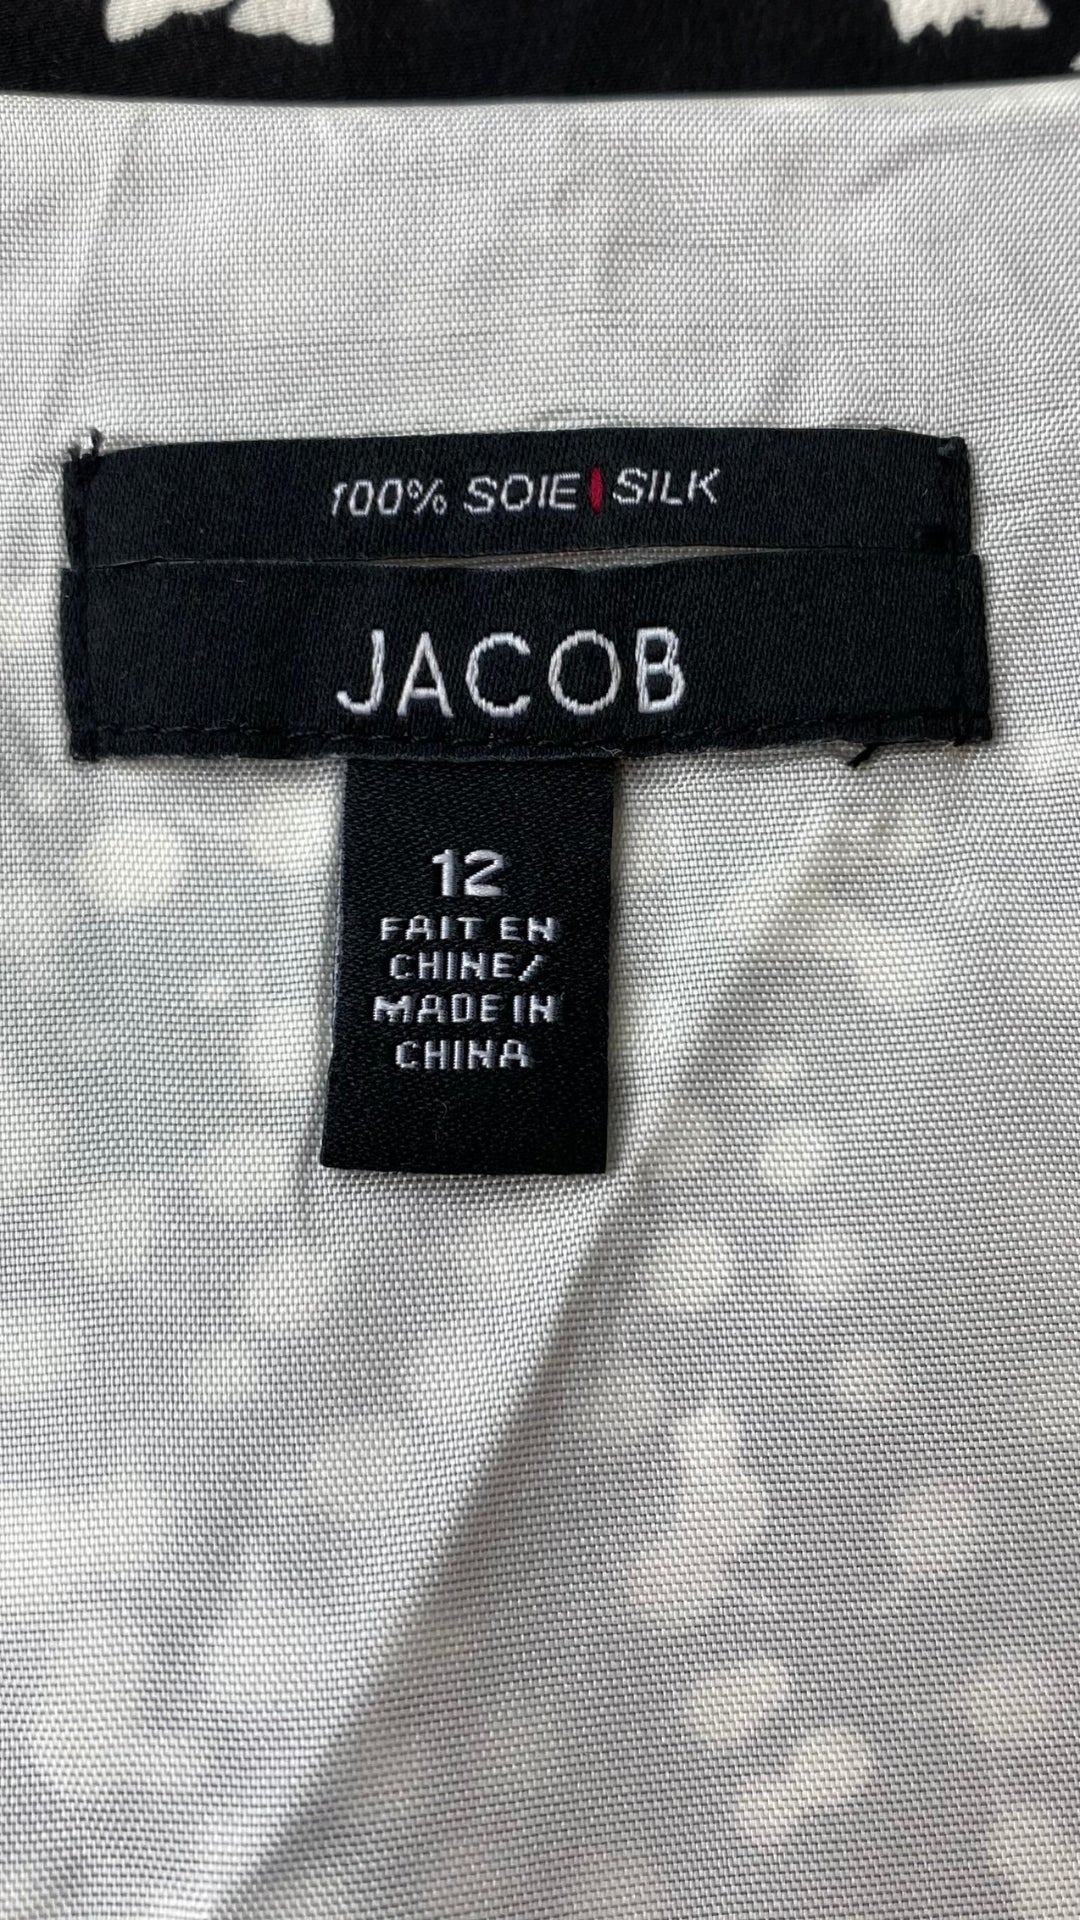 Robe en soie cintrée à motifs crème et noir Jacob, taille 12 (8/10). Vue de l'étiquette de marque, taille.